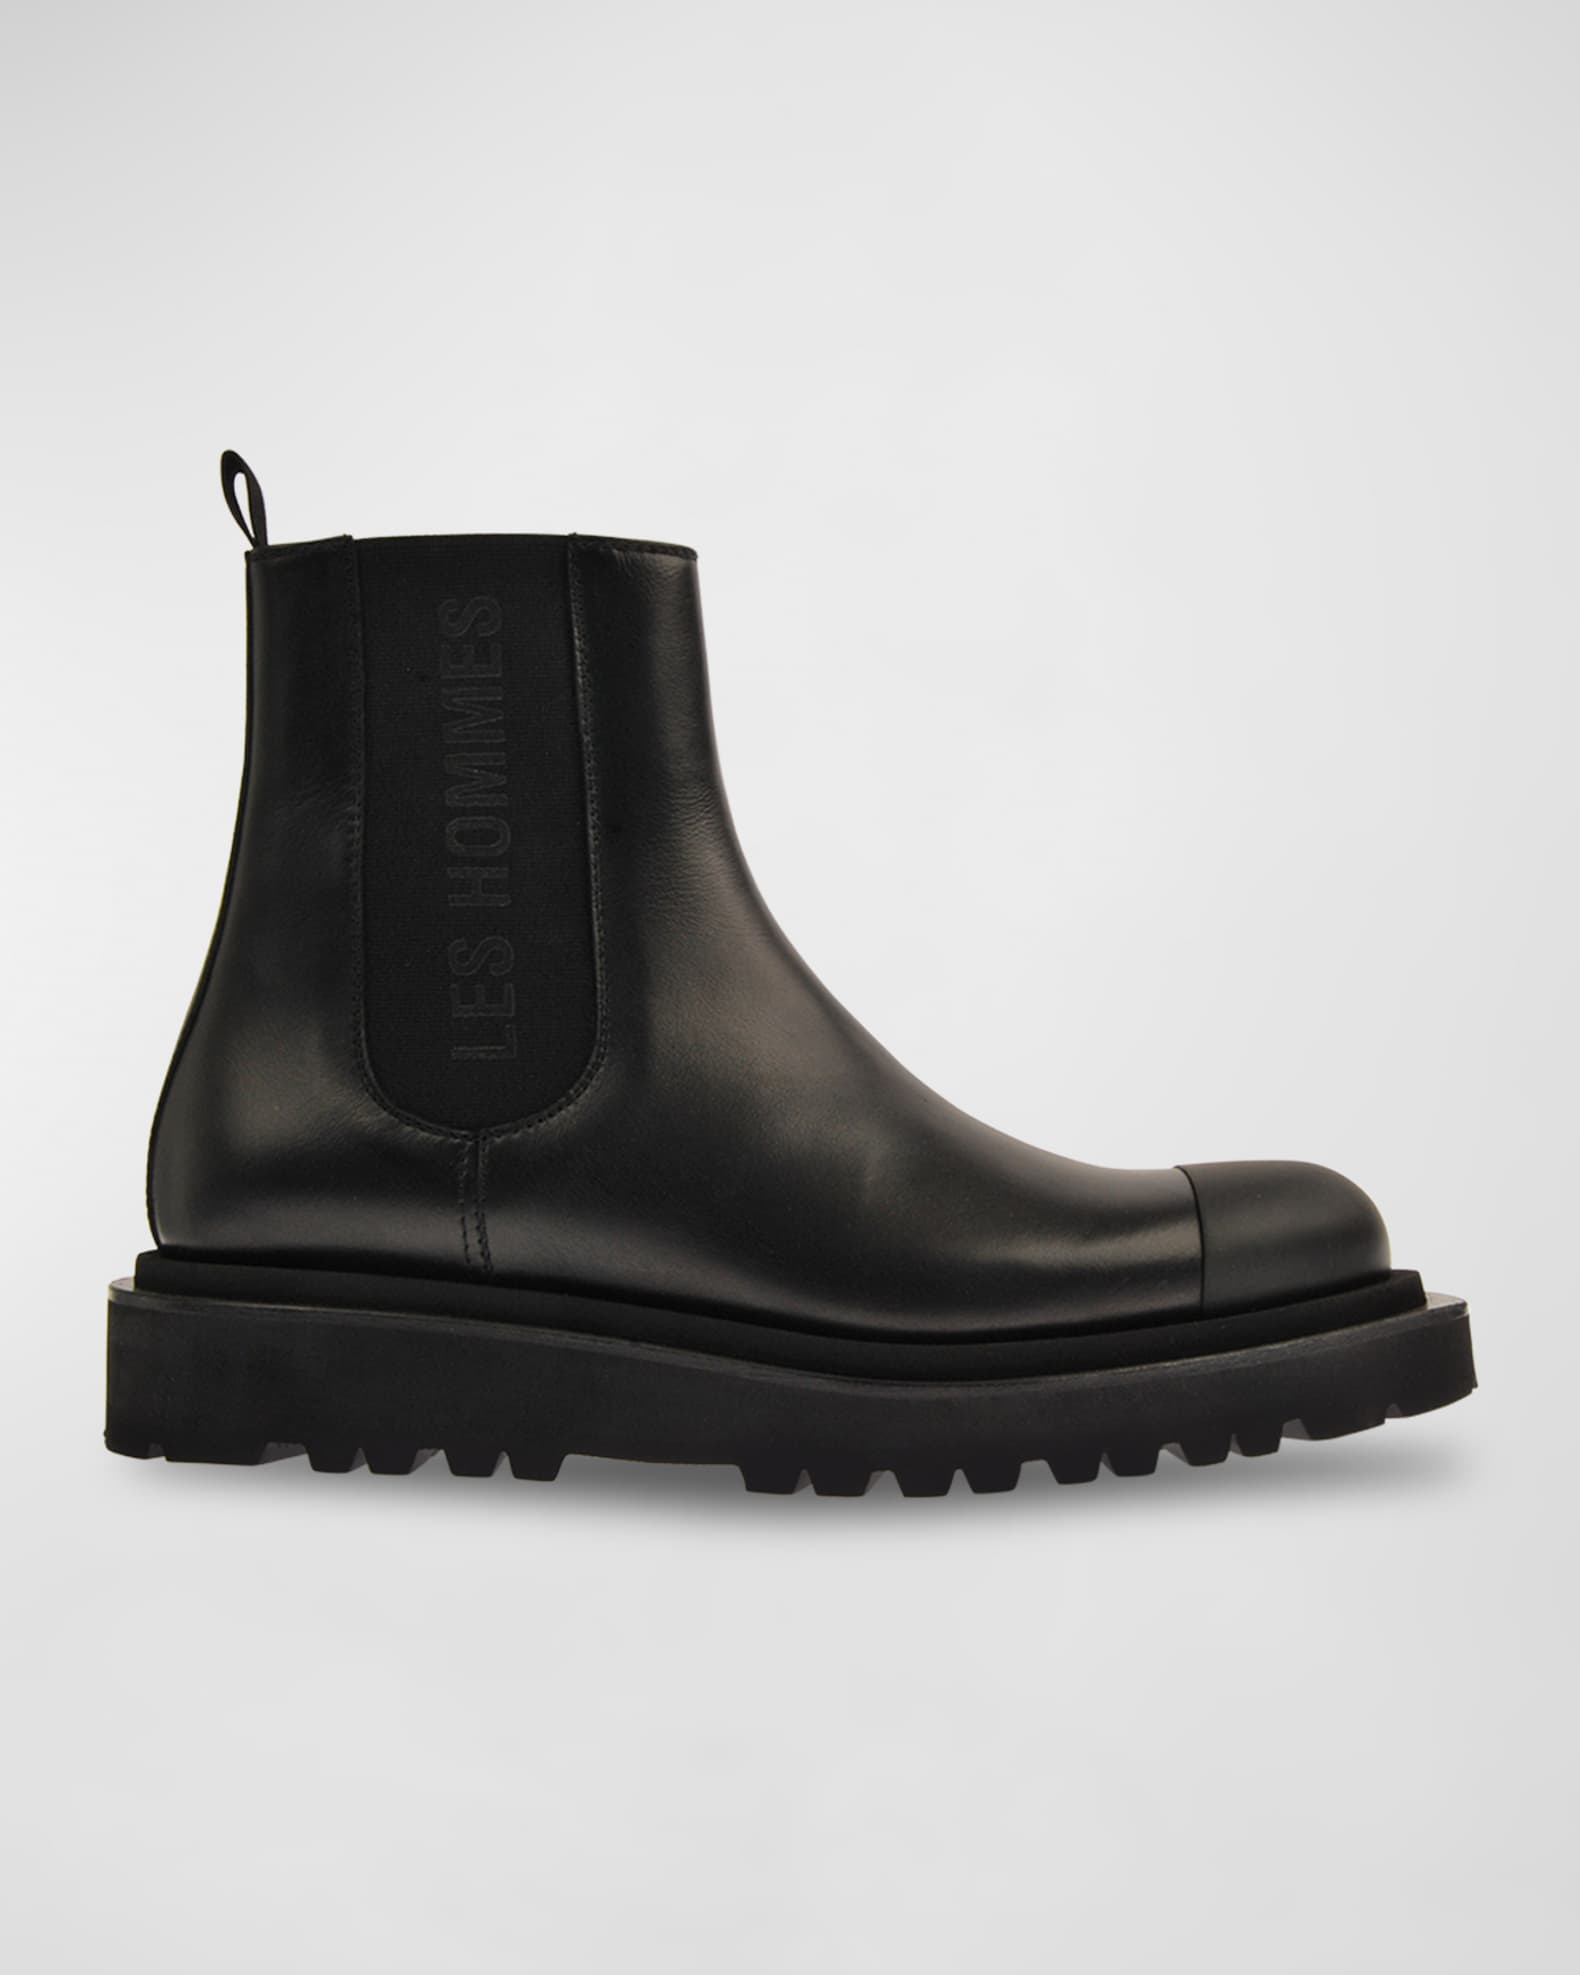 Les Hommes Men's Lug Sole Leather Chelsea Boots | Neiman Marcus